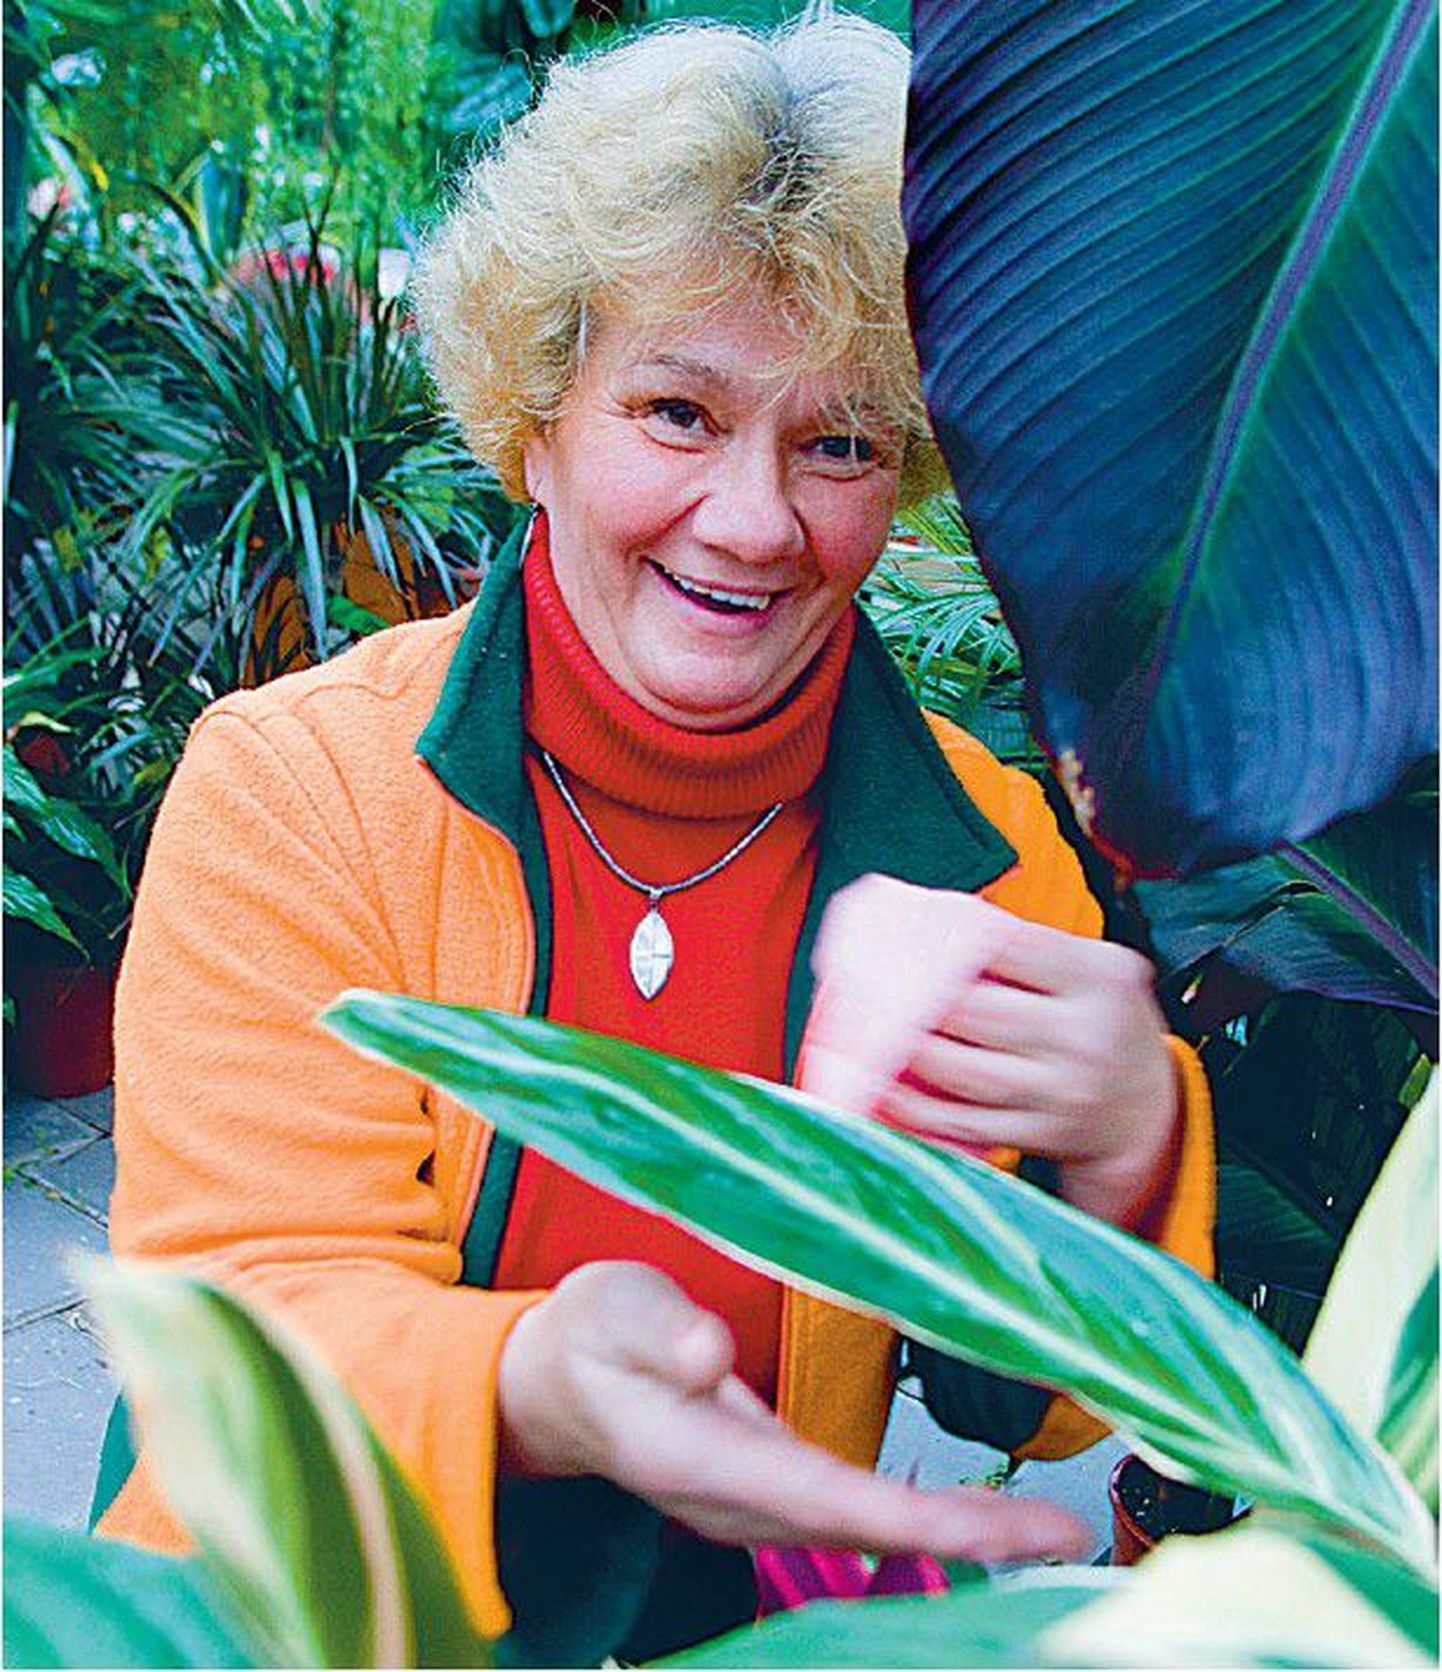 Kui õhk on väga kuiv, tuleks lisaks kastmisele lillede lehti kaks-kolm korda nädalas veega piserdada, soovitab Cerese aianduskeskuse tootejuht Maarika Pedak.